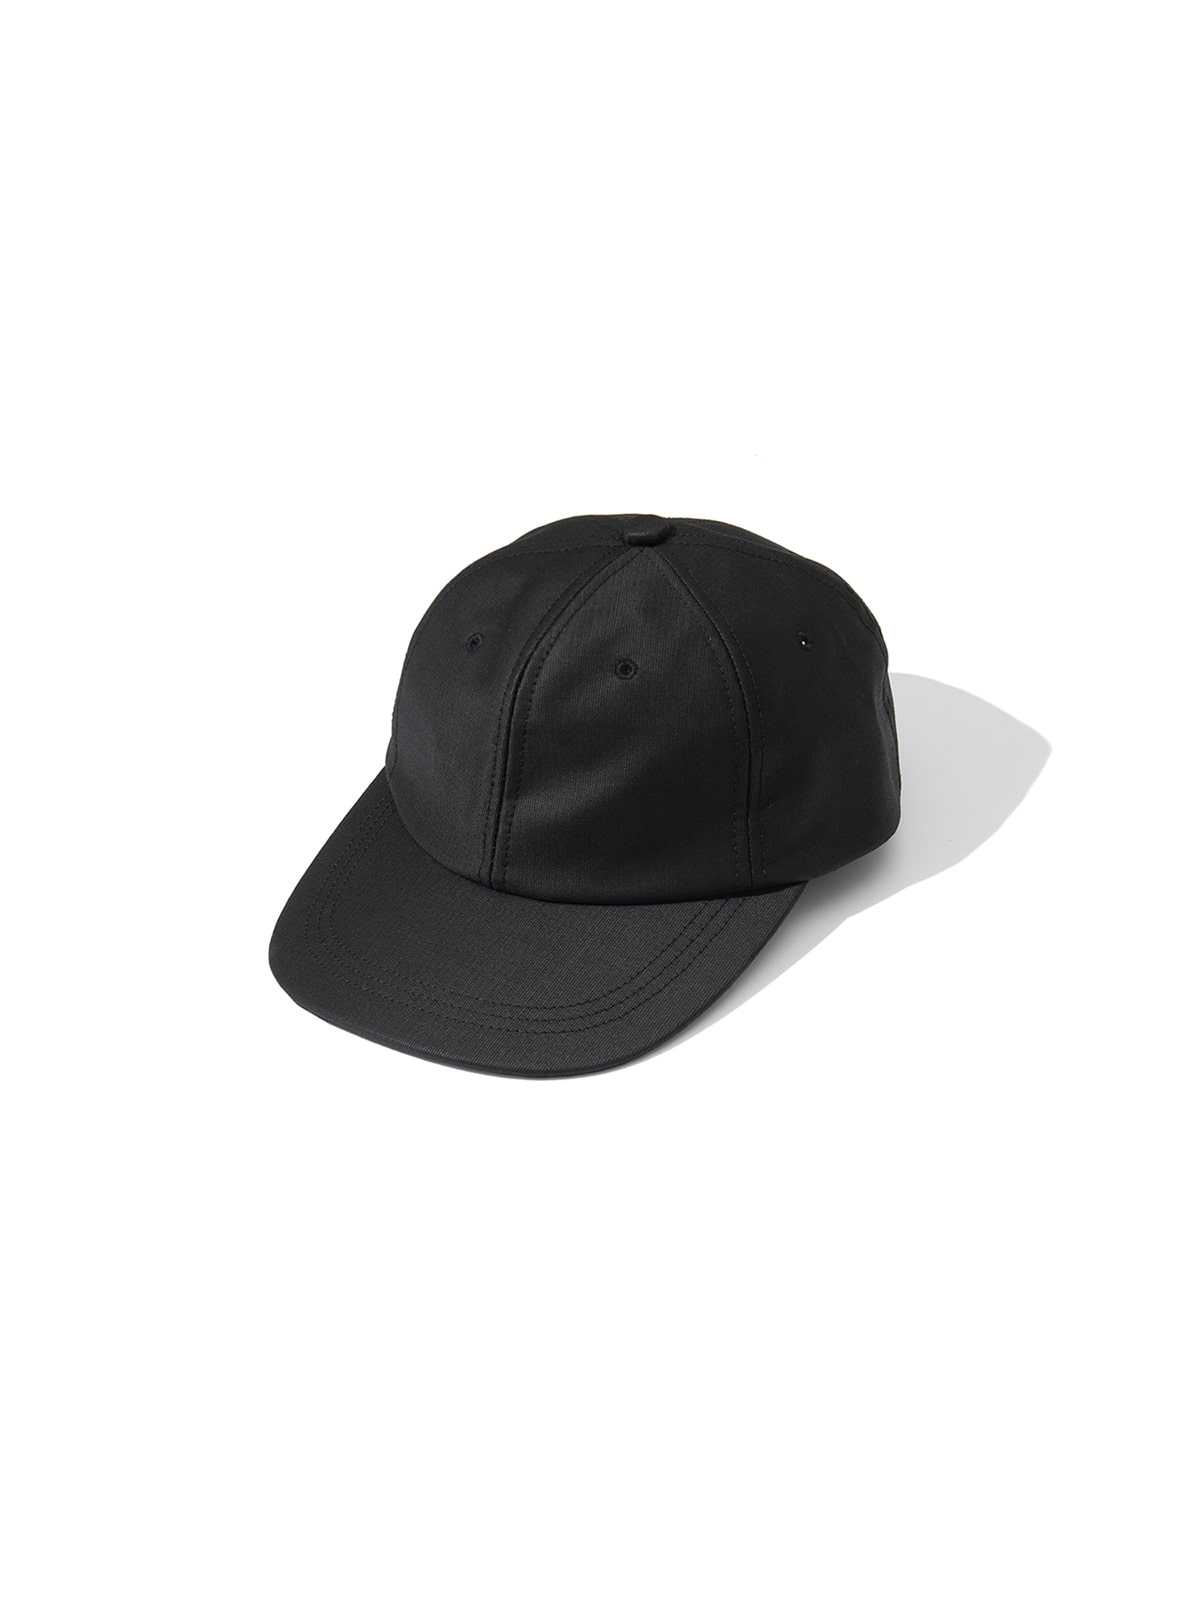 GIFT SHOP CAP (BLACK)